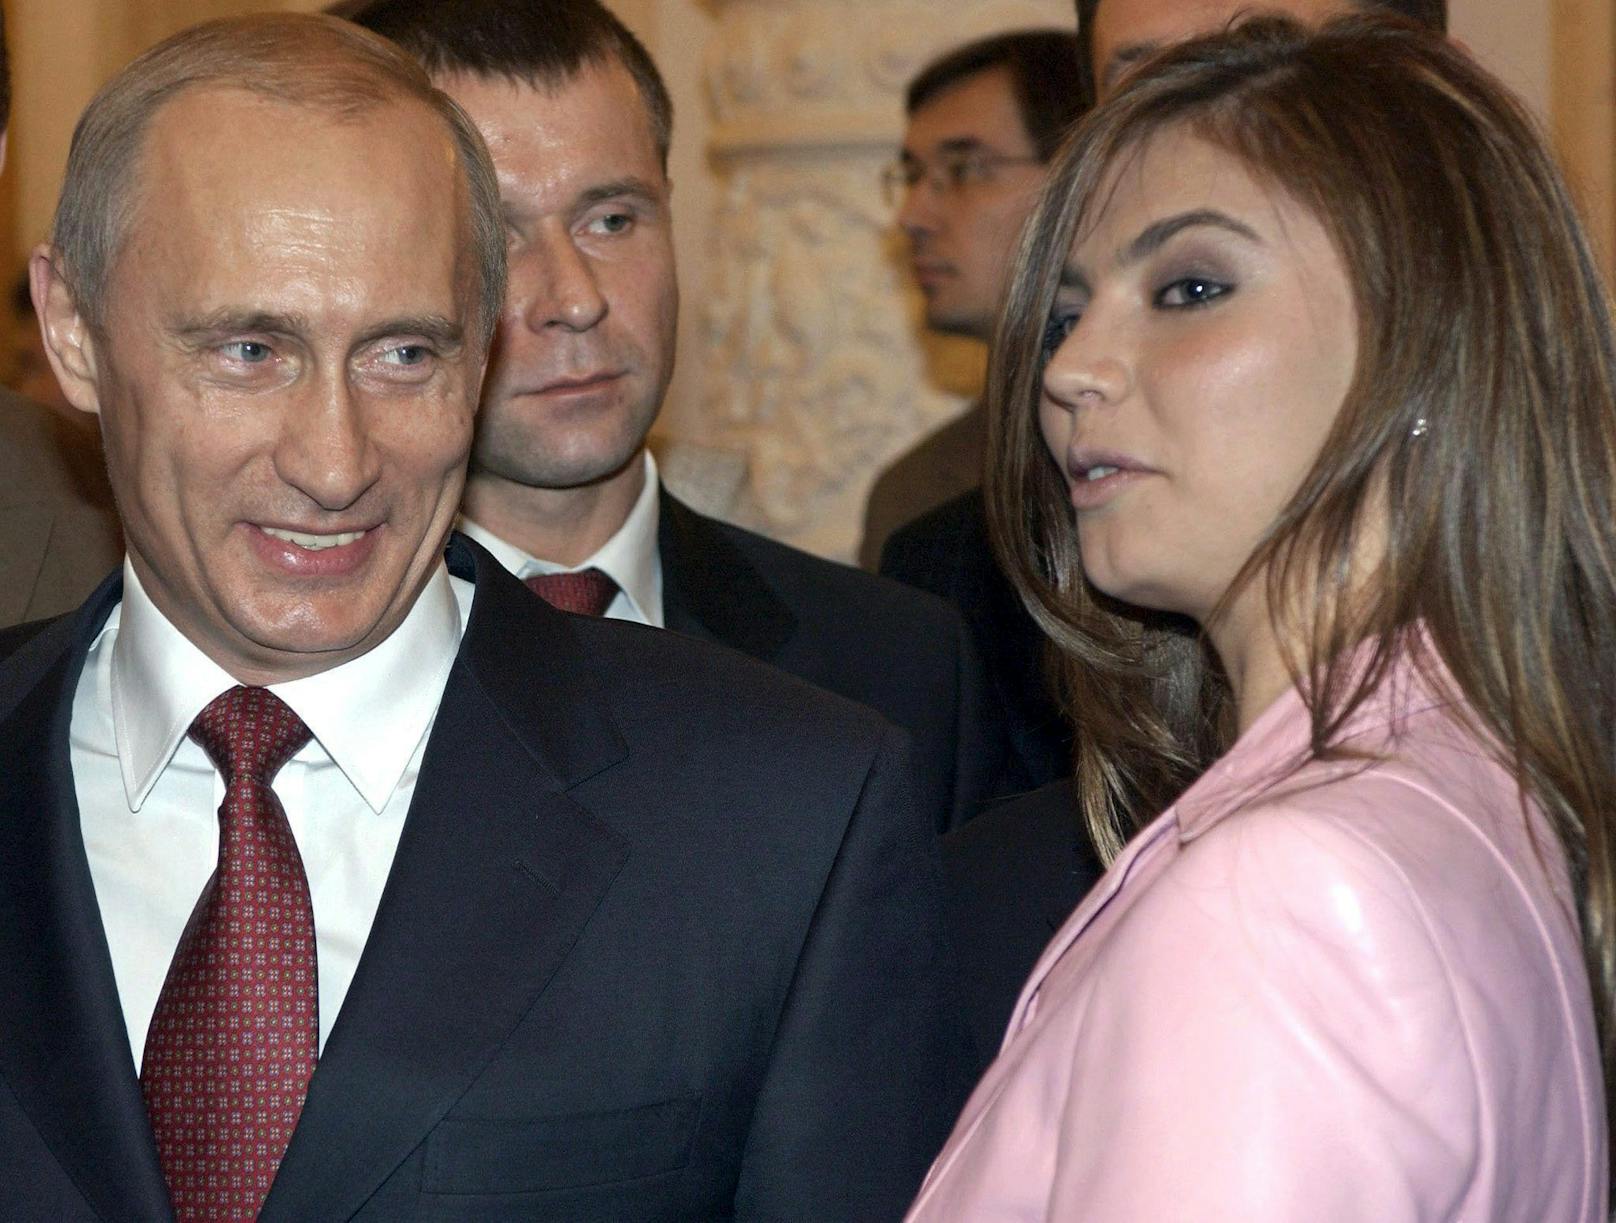 &nbsp;Wladimir Putin und seine Geliebte, Ex-Sportstar Alina Kabaeva.&nbsp;